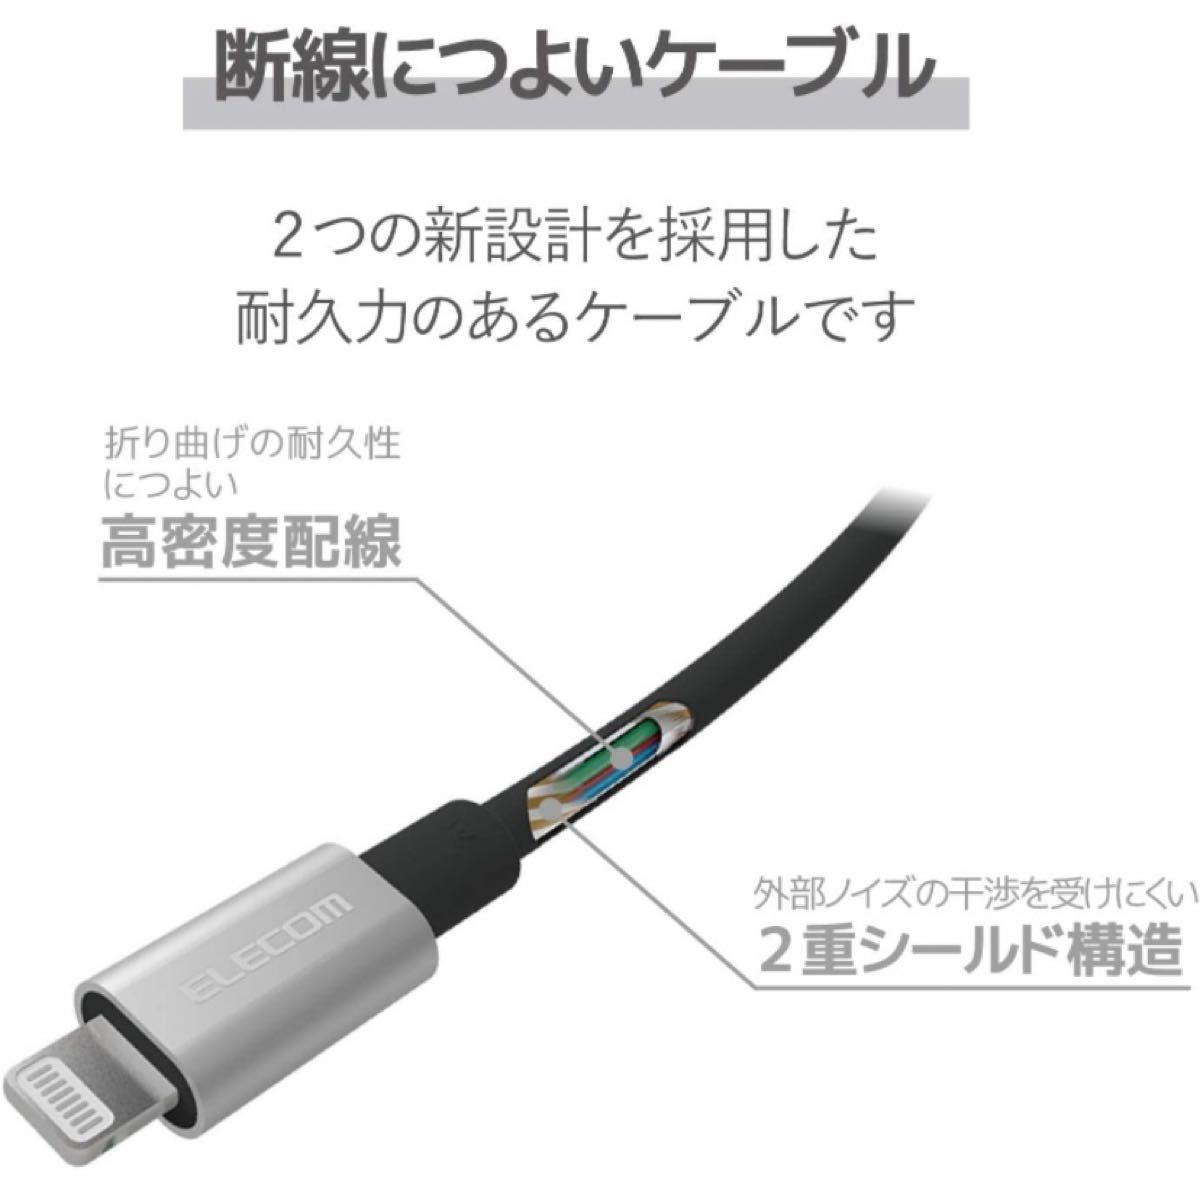 エレコム ケーブル iPhone 充電ケーブル Apple認証品 1m グレー 急速充電 USB Lightning Apple